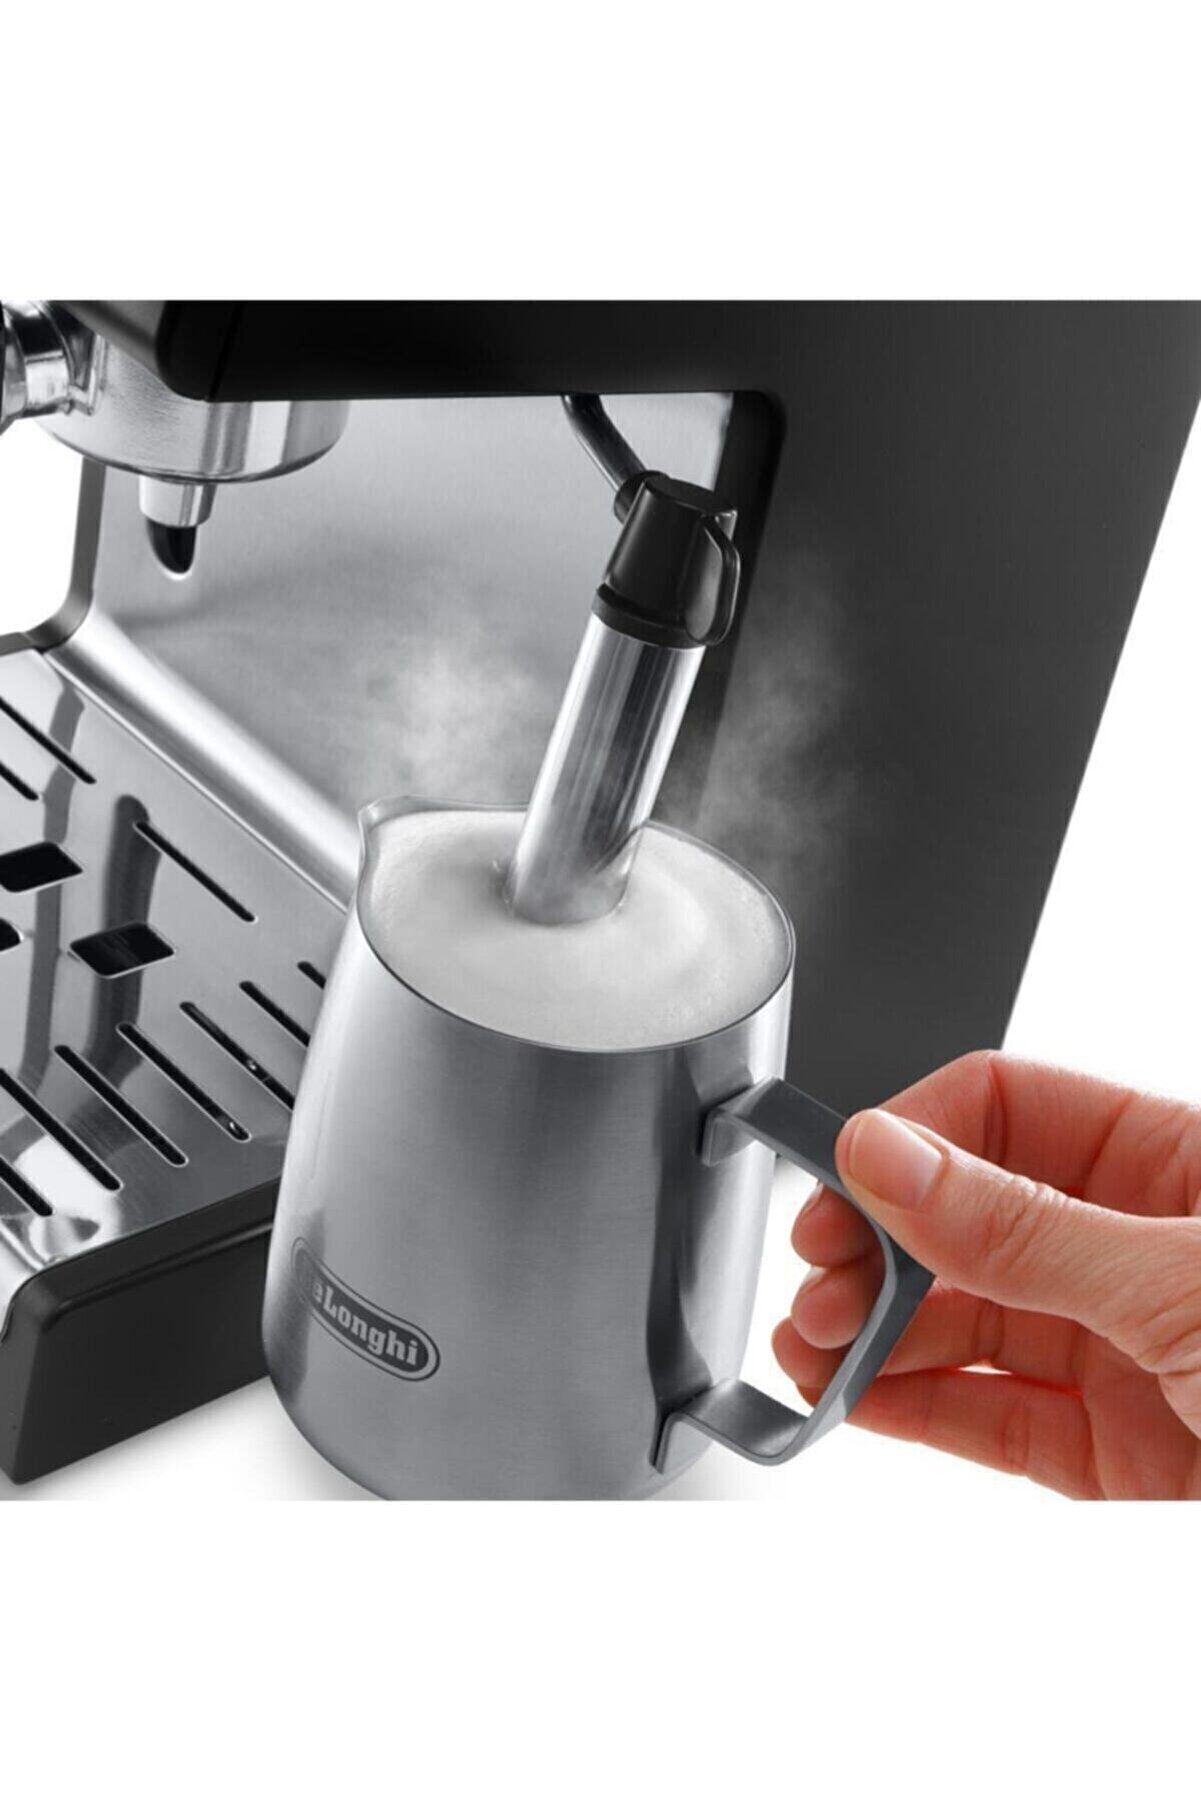 Delonghi Manuel / Barista Tipi Espresso Makinesi ECP 33.21.Bk